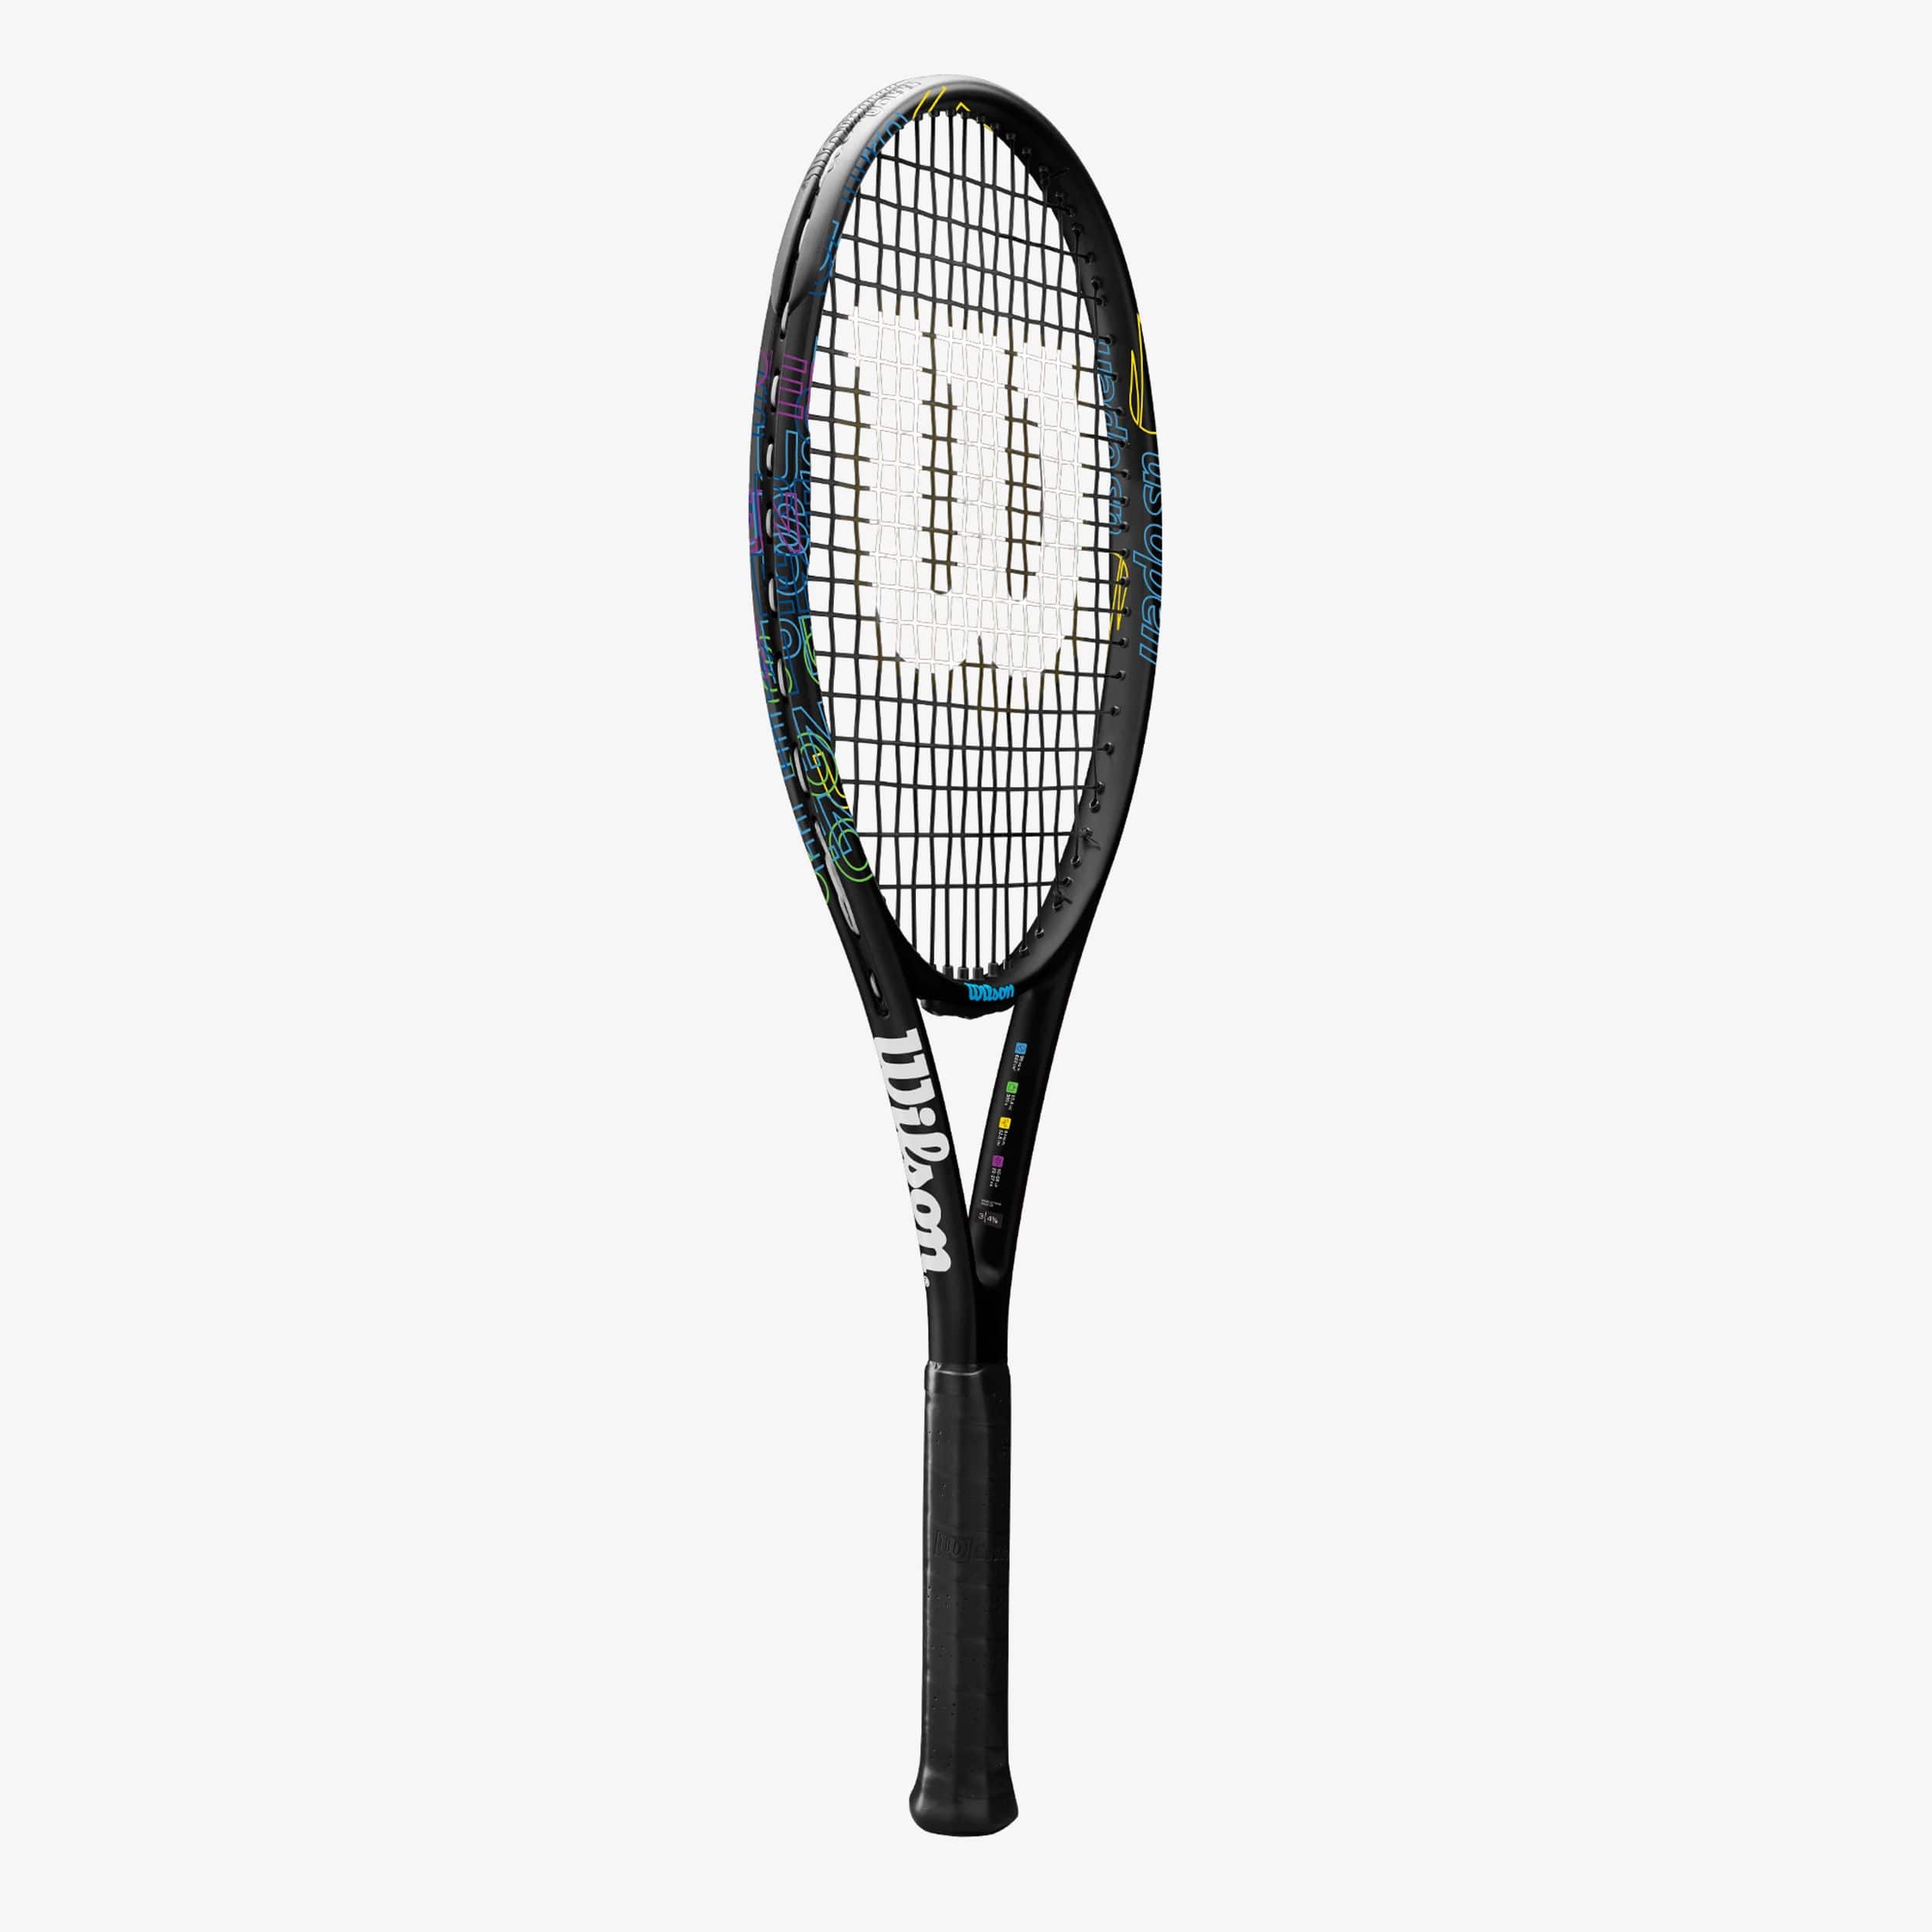 1 ensemble de jouets de raquette de Tennis accessoires de Sport en